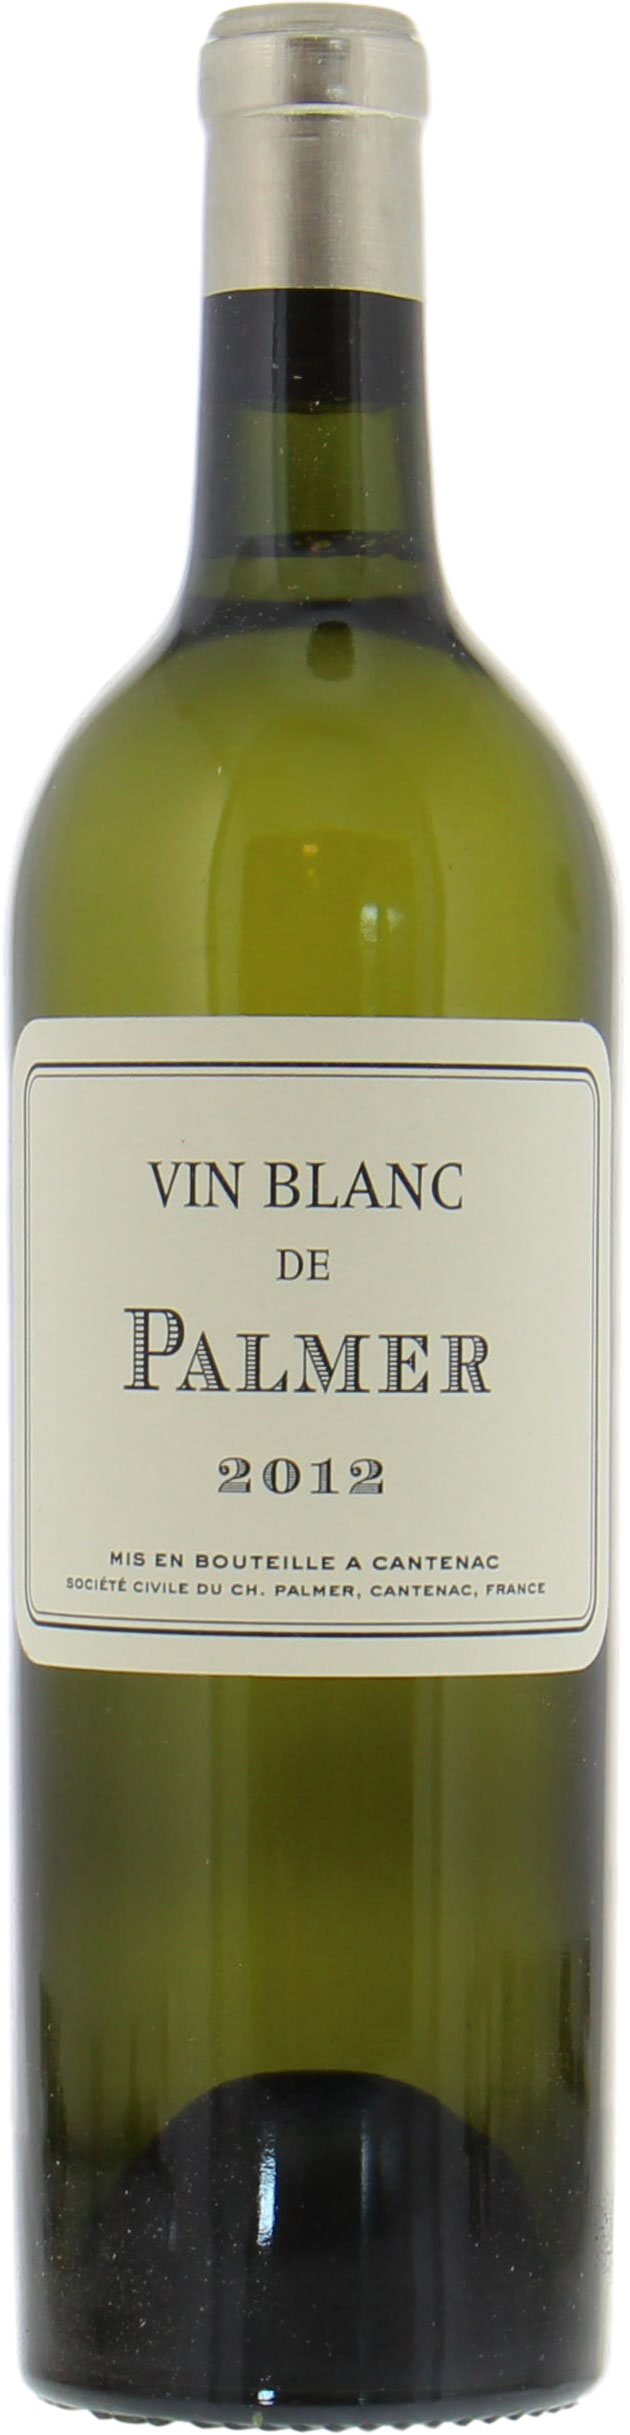 Chateau Palmer - Vin Blanc de Palmer 2012